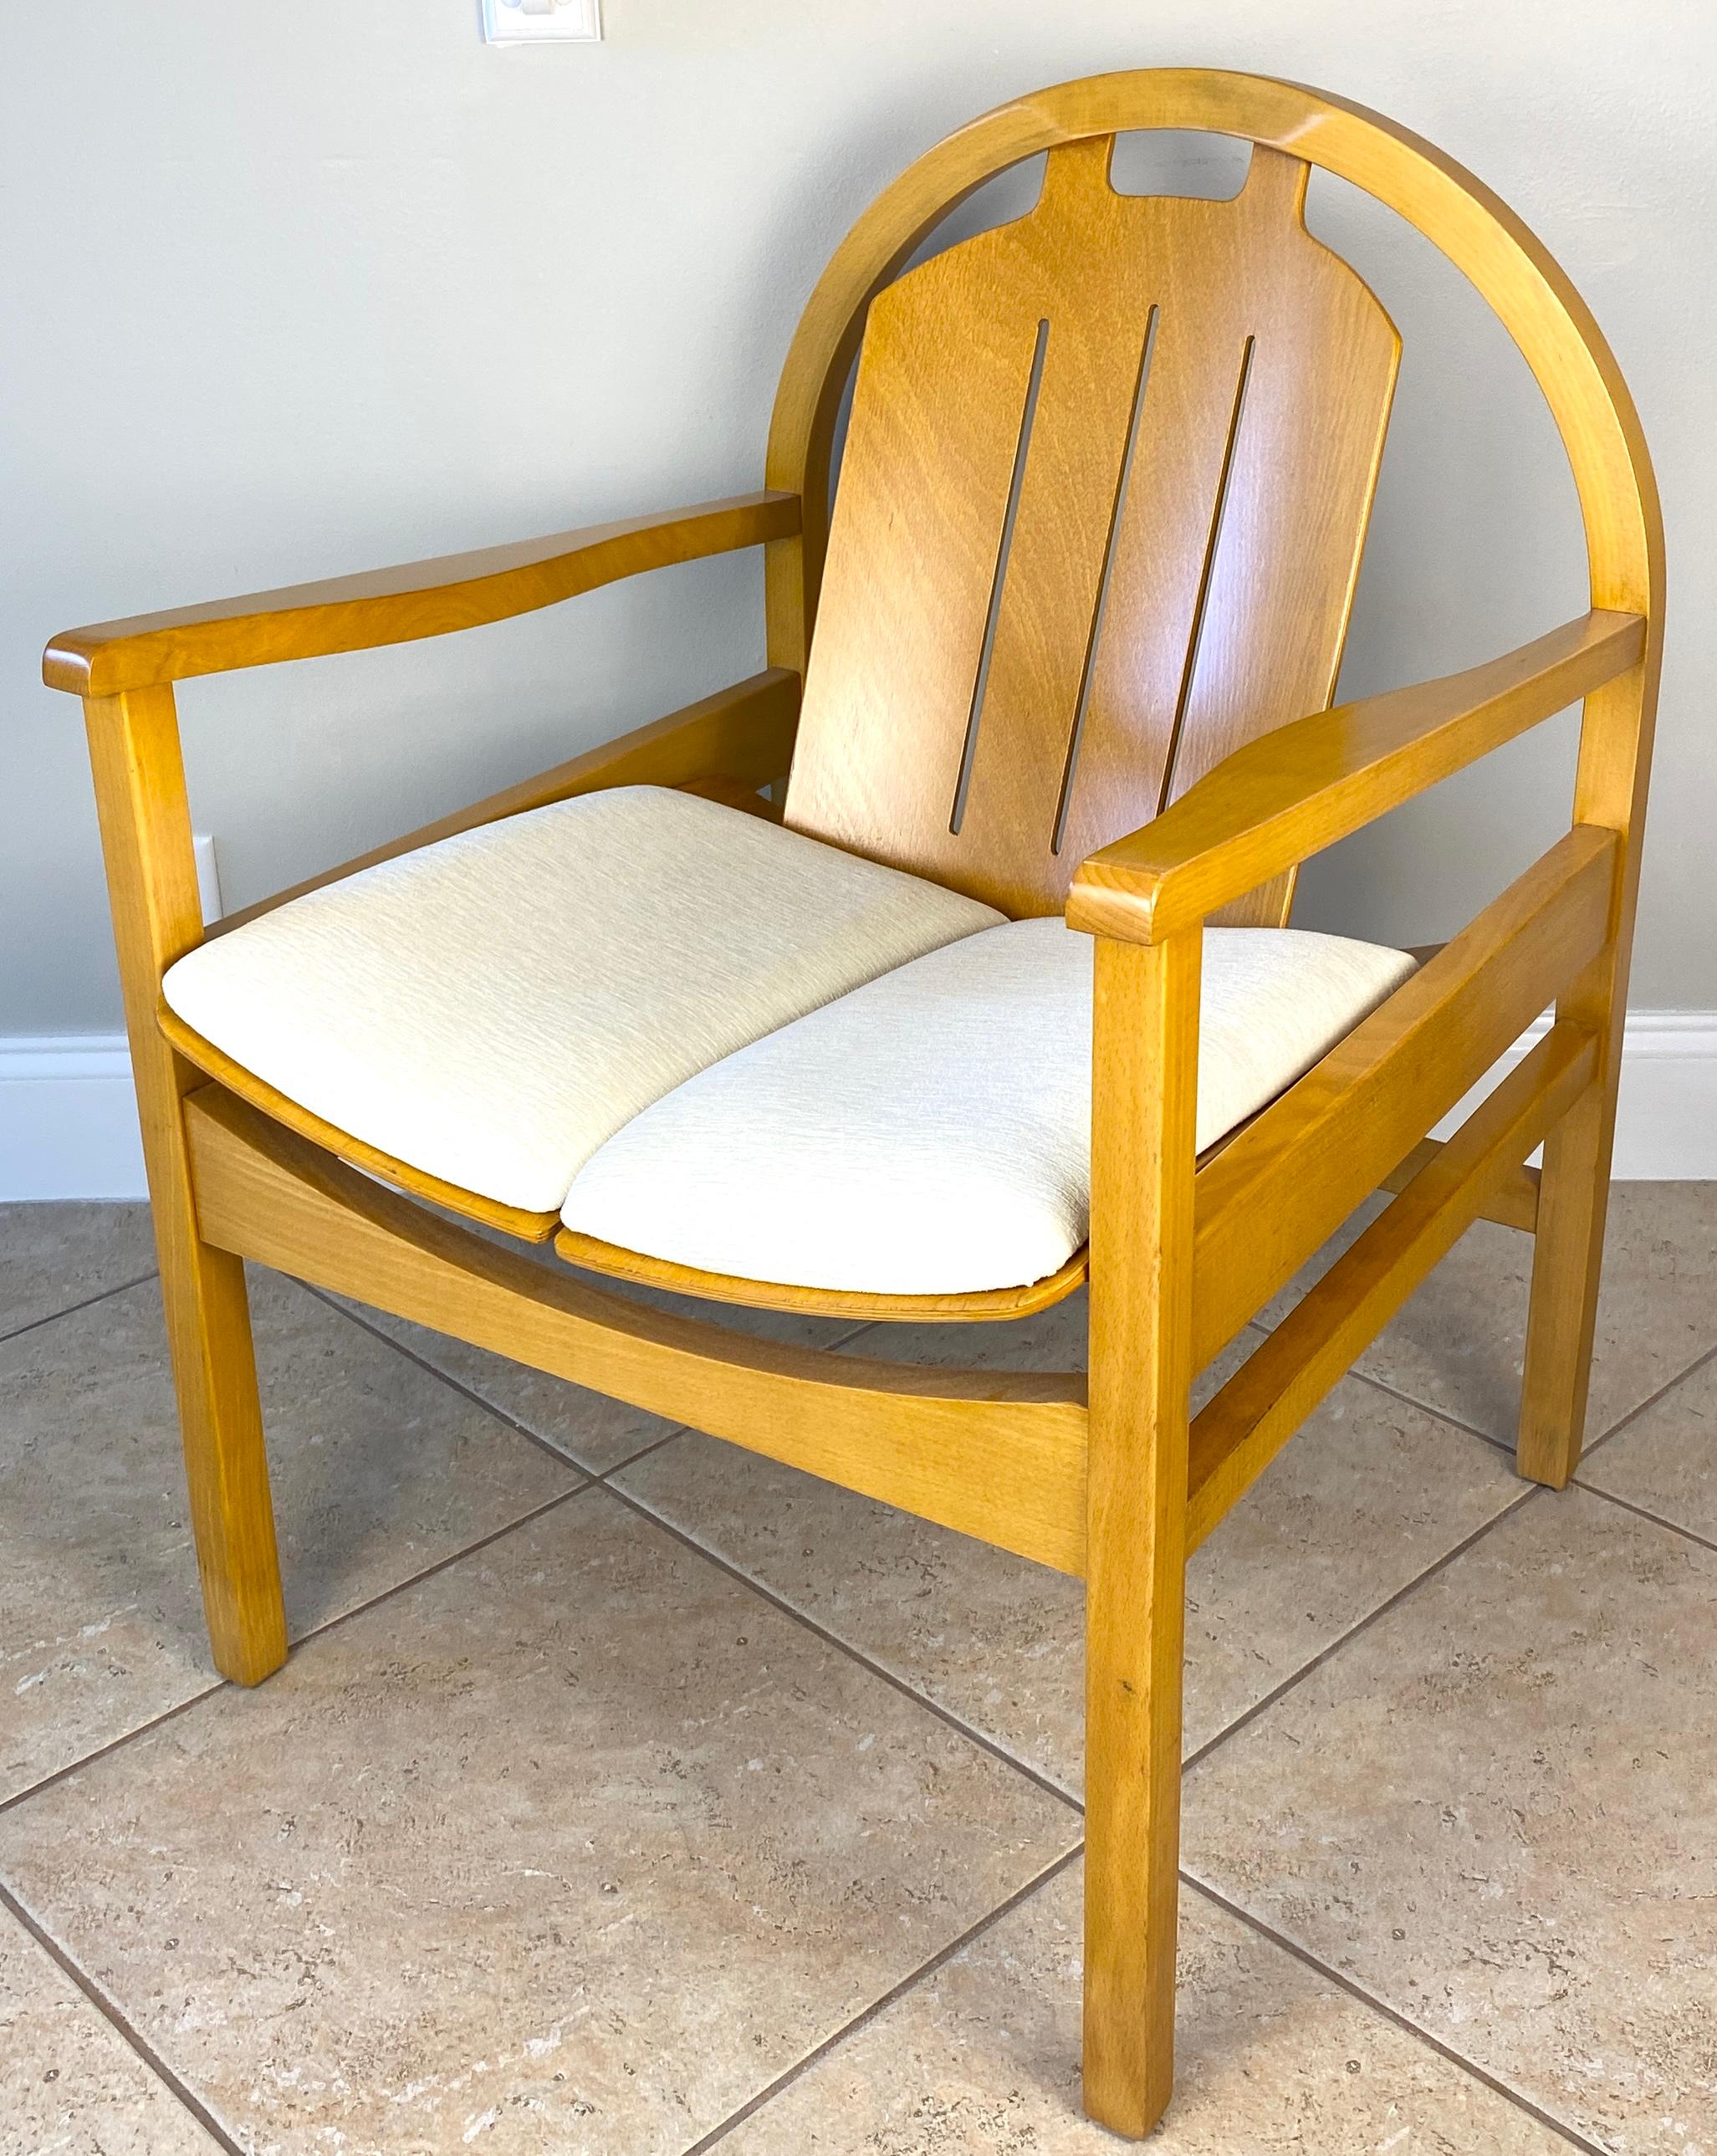 Ein feines, aufgearbeitetes und neu gepolstertes Paar Baumann Sessel Buchenholz, mit Creme Farbe Stoff um 1970. 

Diese wunderschönen und qualitativ hochwertigen Sessel oder Argos Lounge Chairs wurden von Baumann France entworfen und hergestellt.